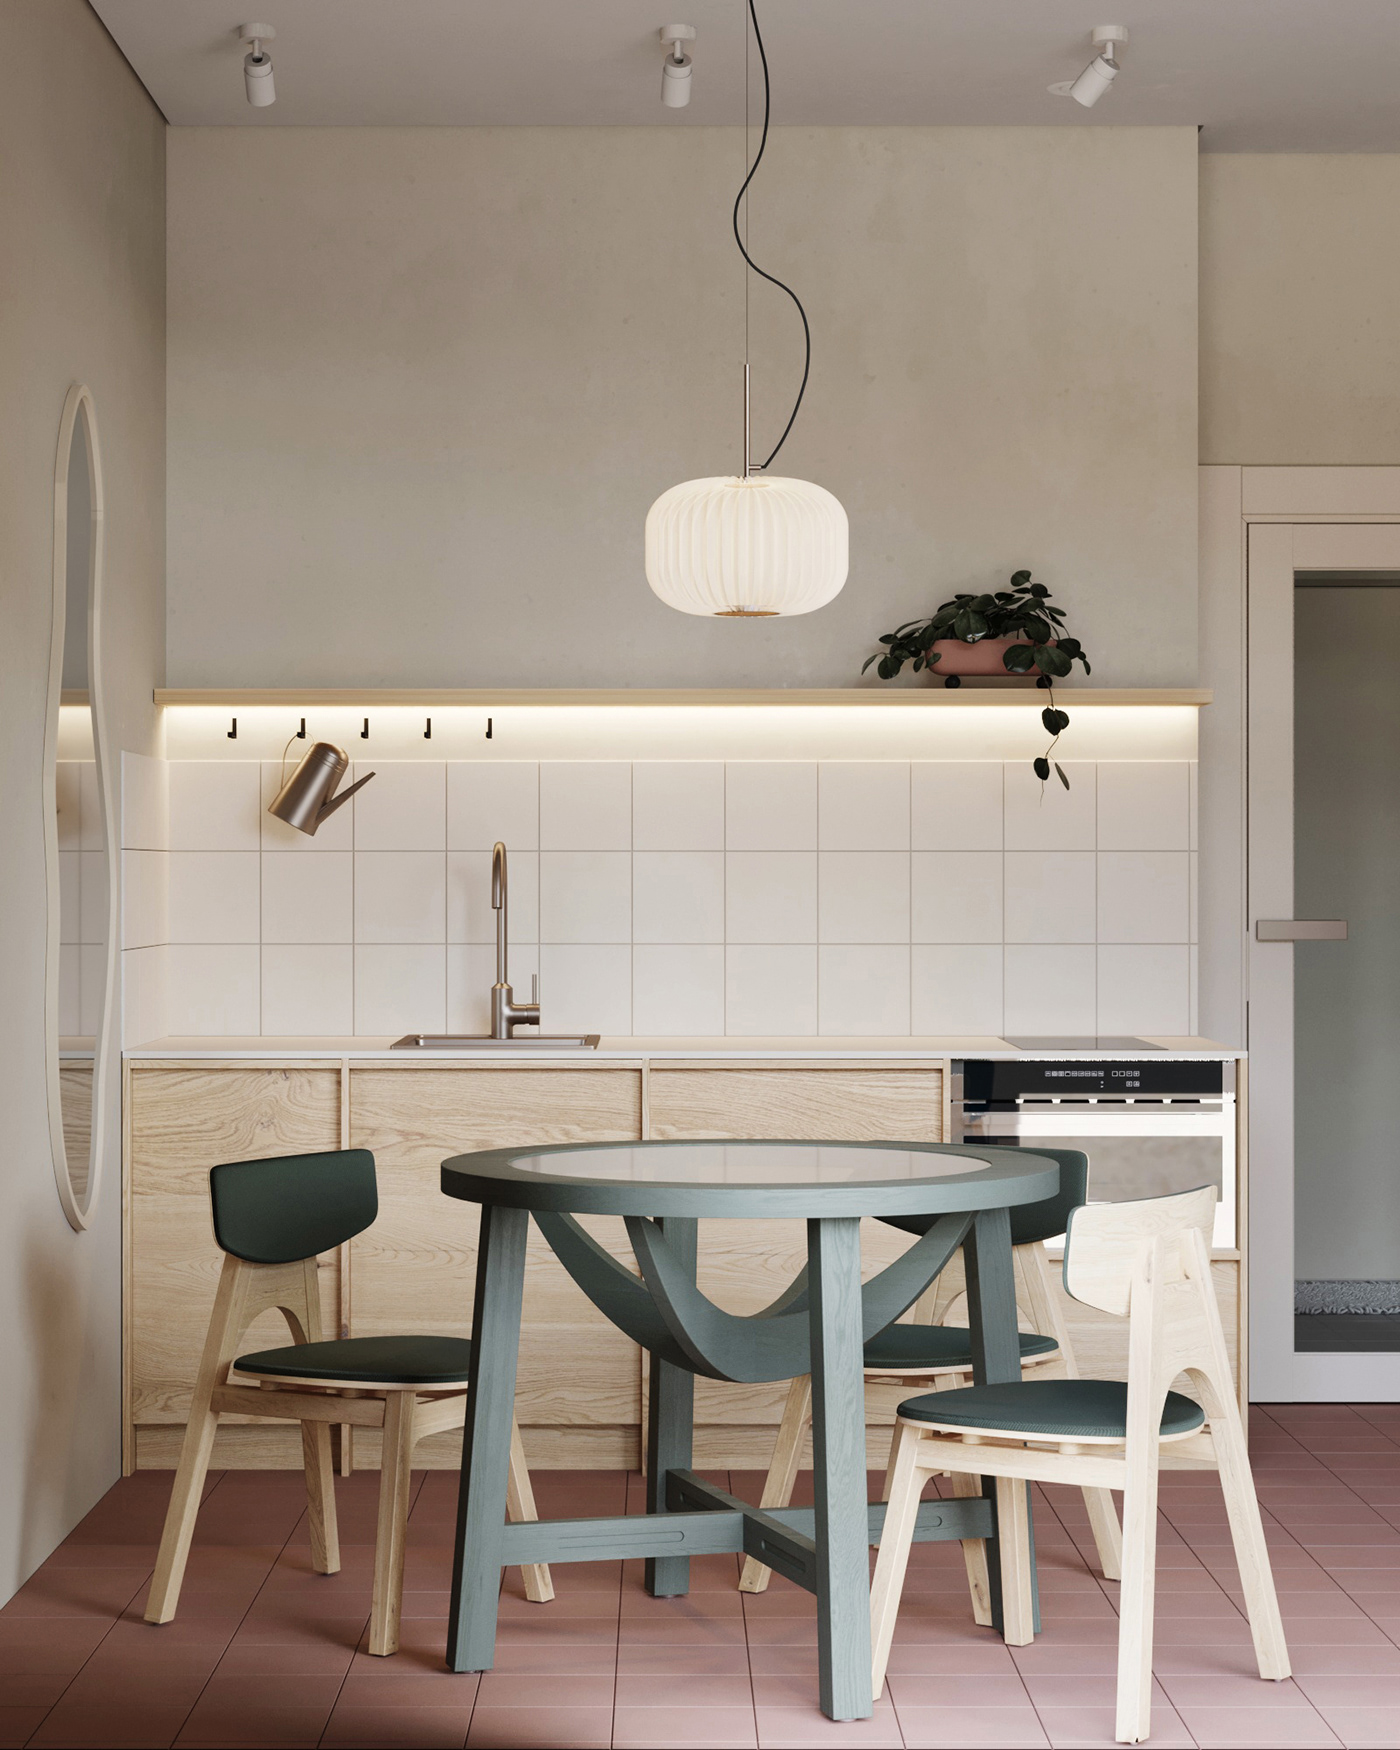 3dsmax airbnb airbnb apartment cozylivingroom interiordesign interiorvisualisation minimalisticinterior scandinavianinterior smallapartment smallapartmentdesign